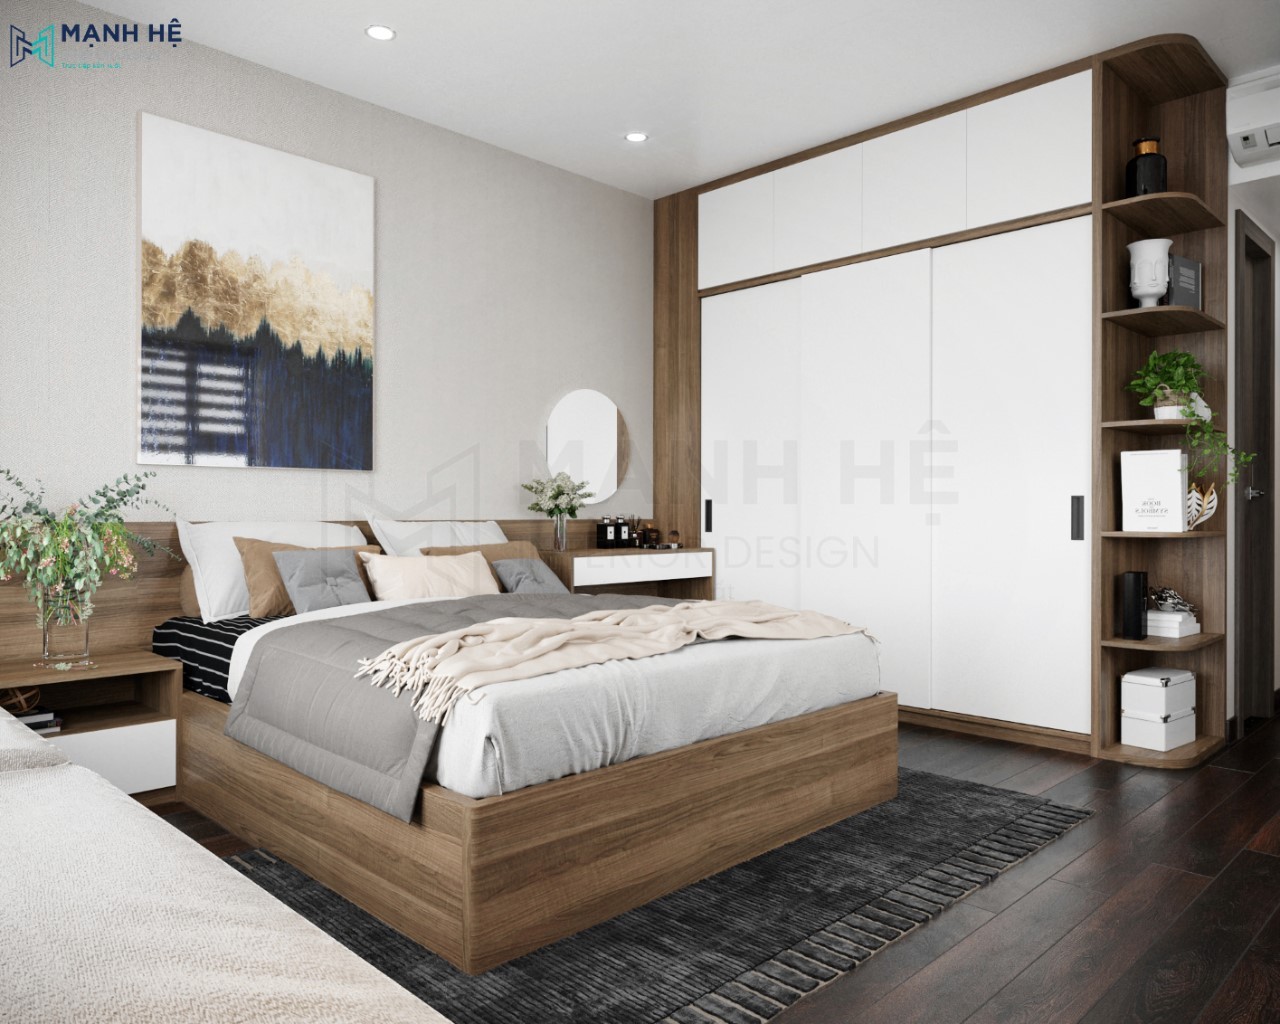 Lựa chọn chất liệu gỗ cho giường ngủ sẽ đem đến một giấc ngủ an bình